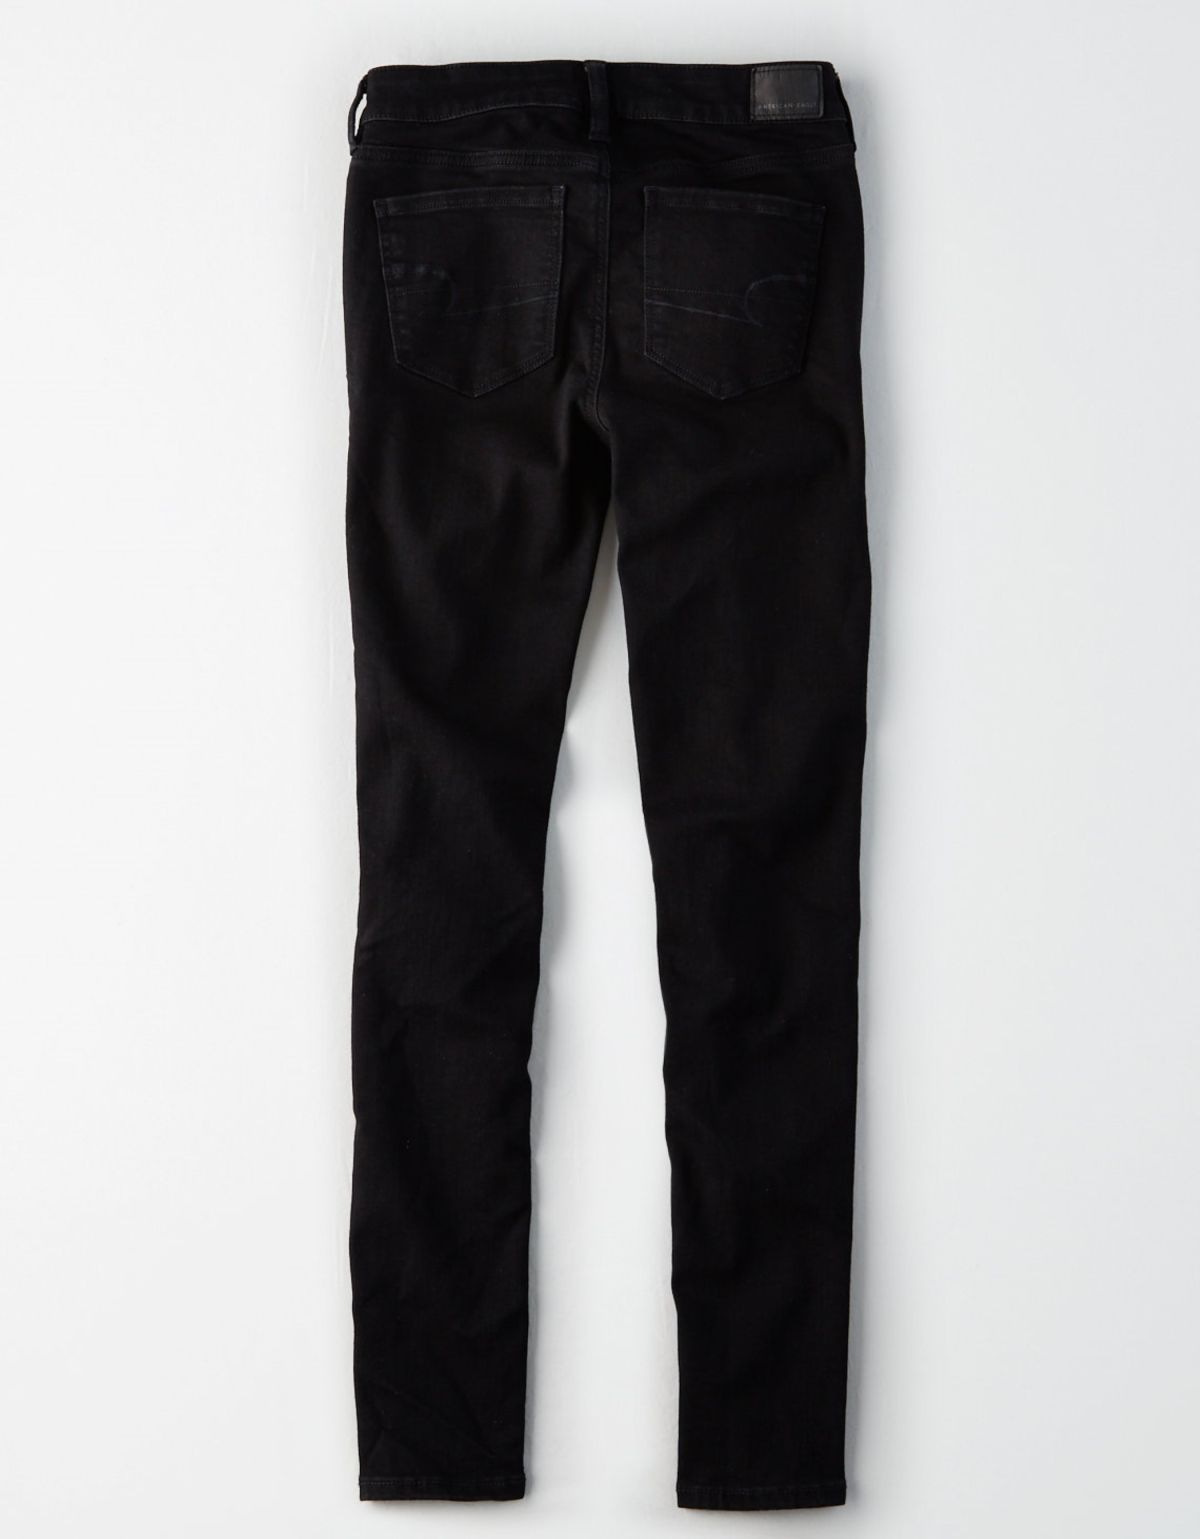  ג'ינס סקיני בגזרה נמוכה של AMERICAN EAGLE